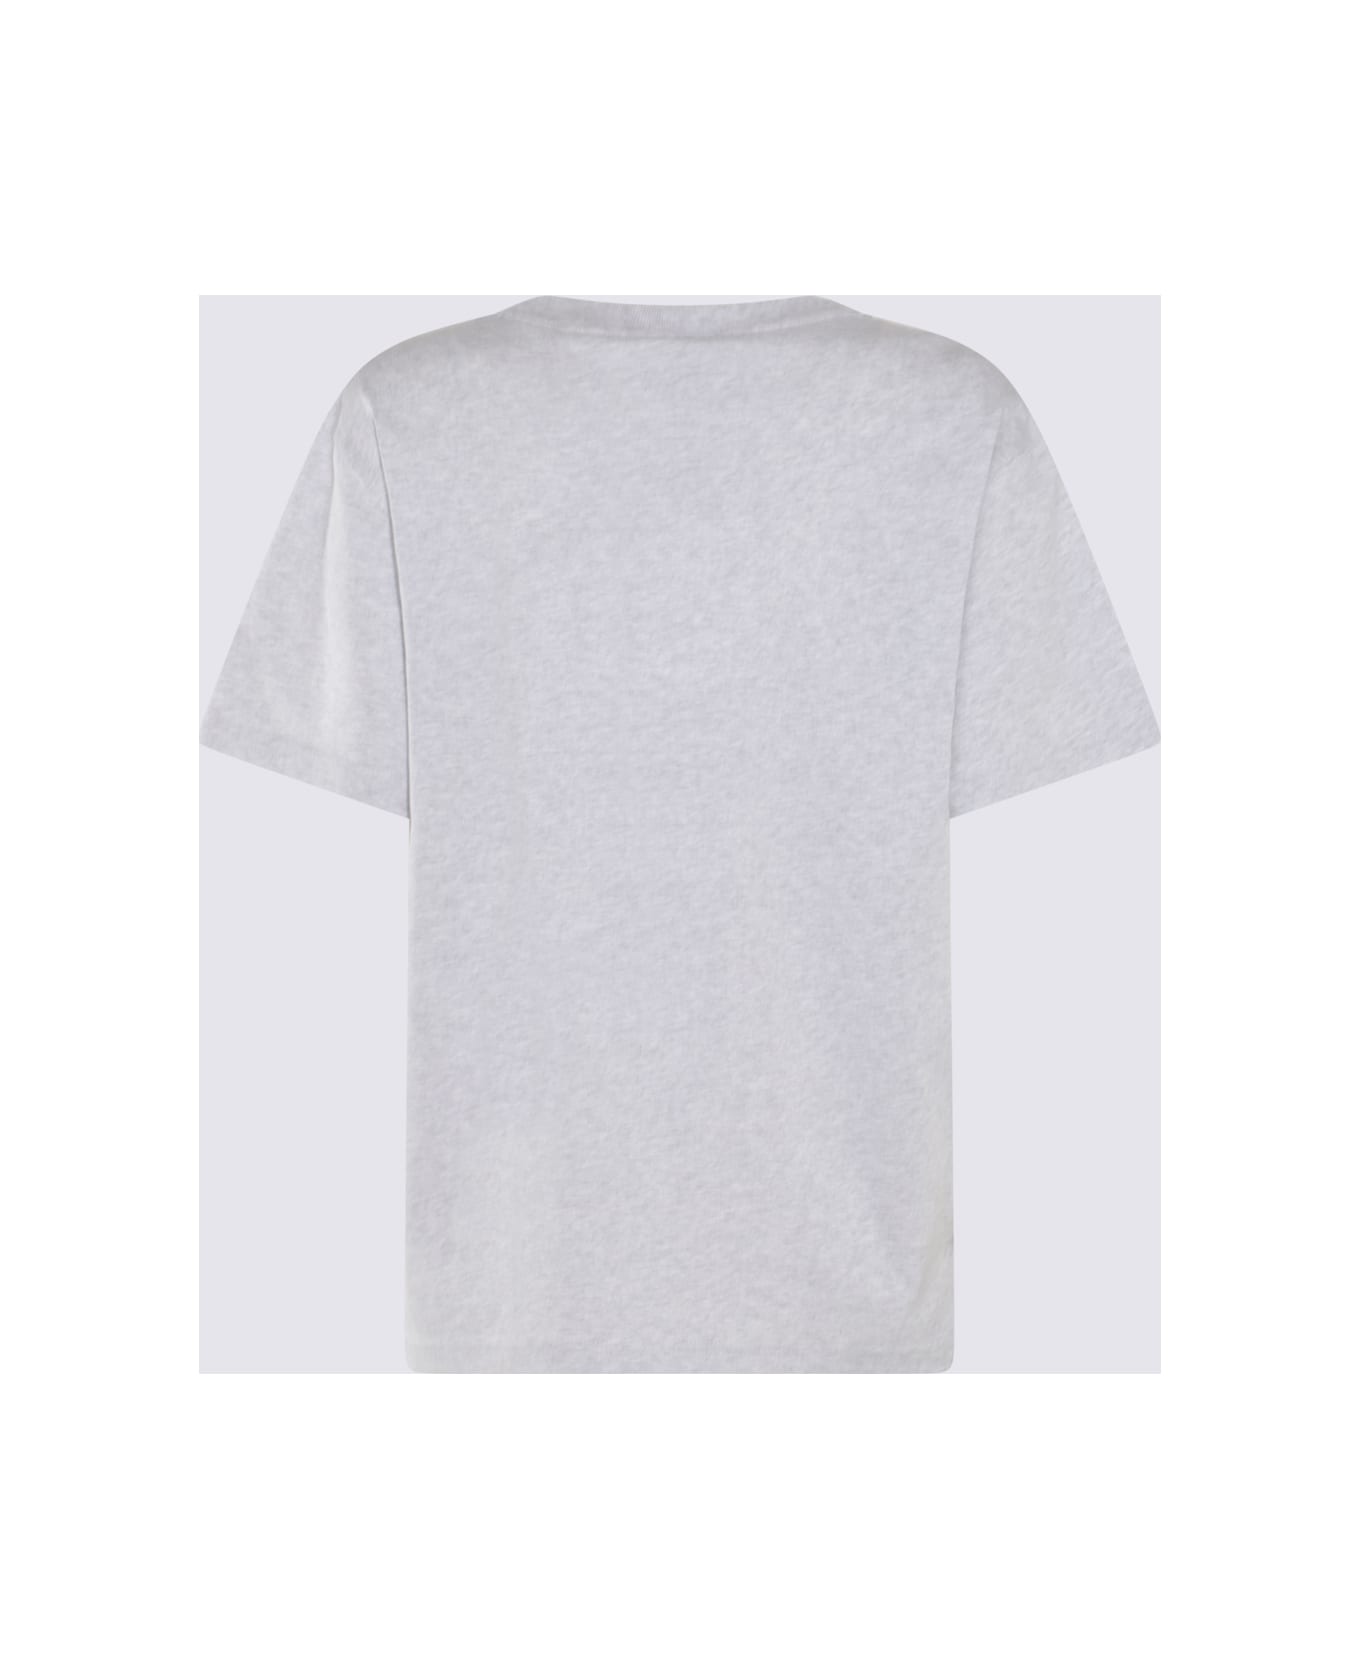 Alexander Wang Light Grey Cotton T-shirt - LIGHT HEATHER GREY Tシャツ